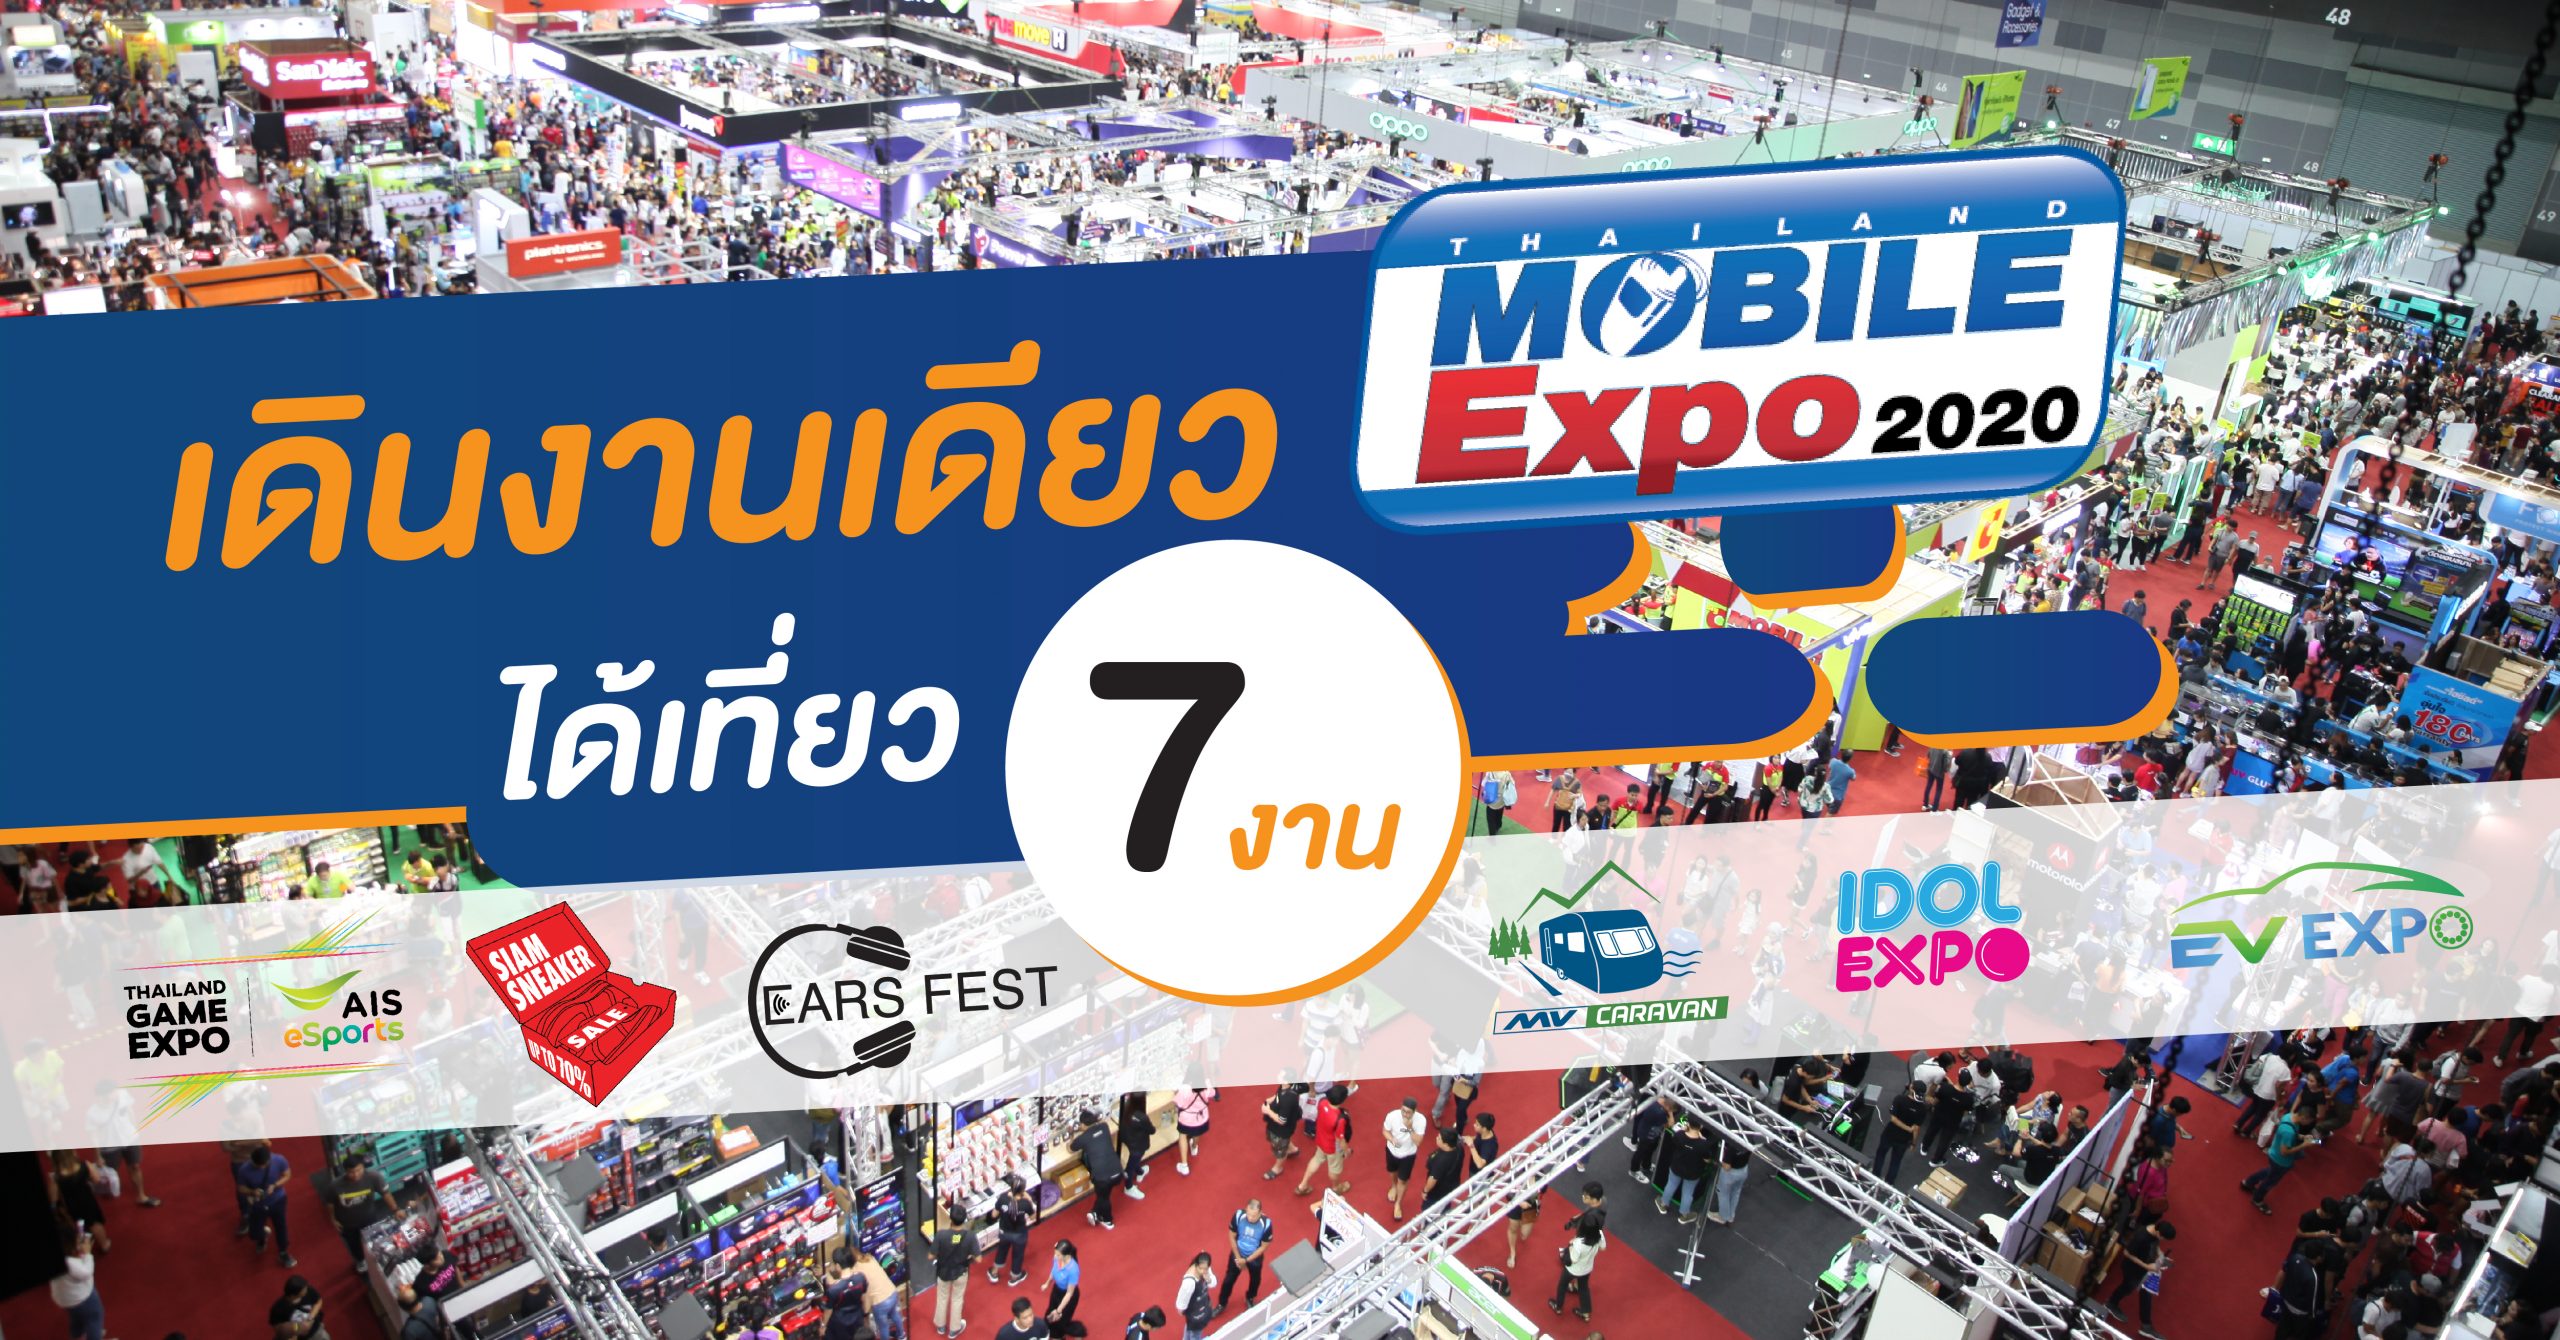 มางาน Thailand Mobile Expo 2020 งานเดียวเหมือนได้มาเดินเที่ยว 7 งาน